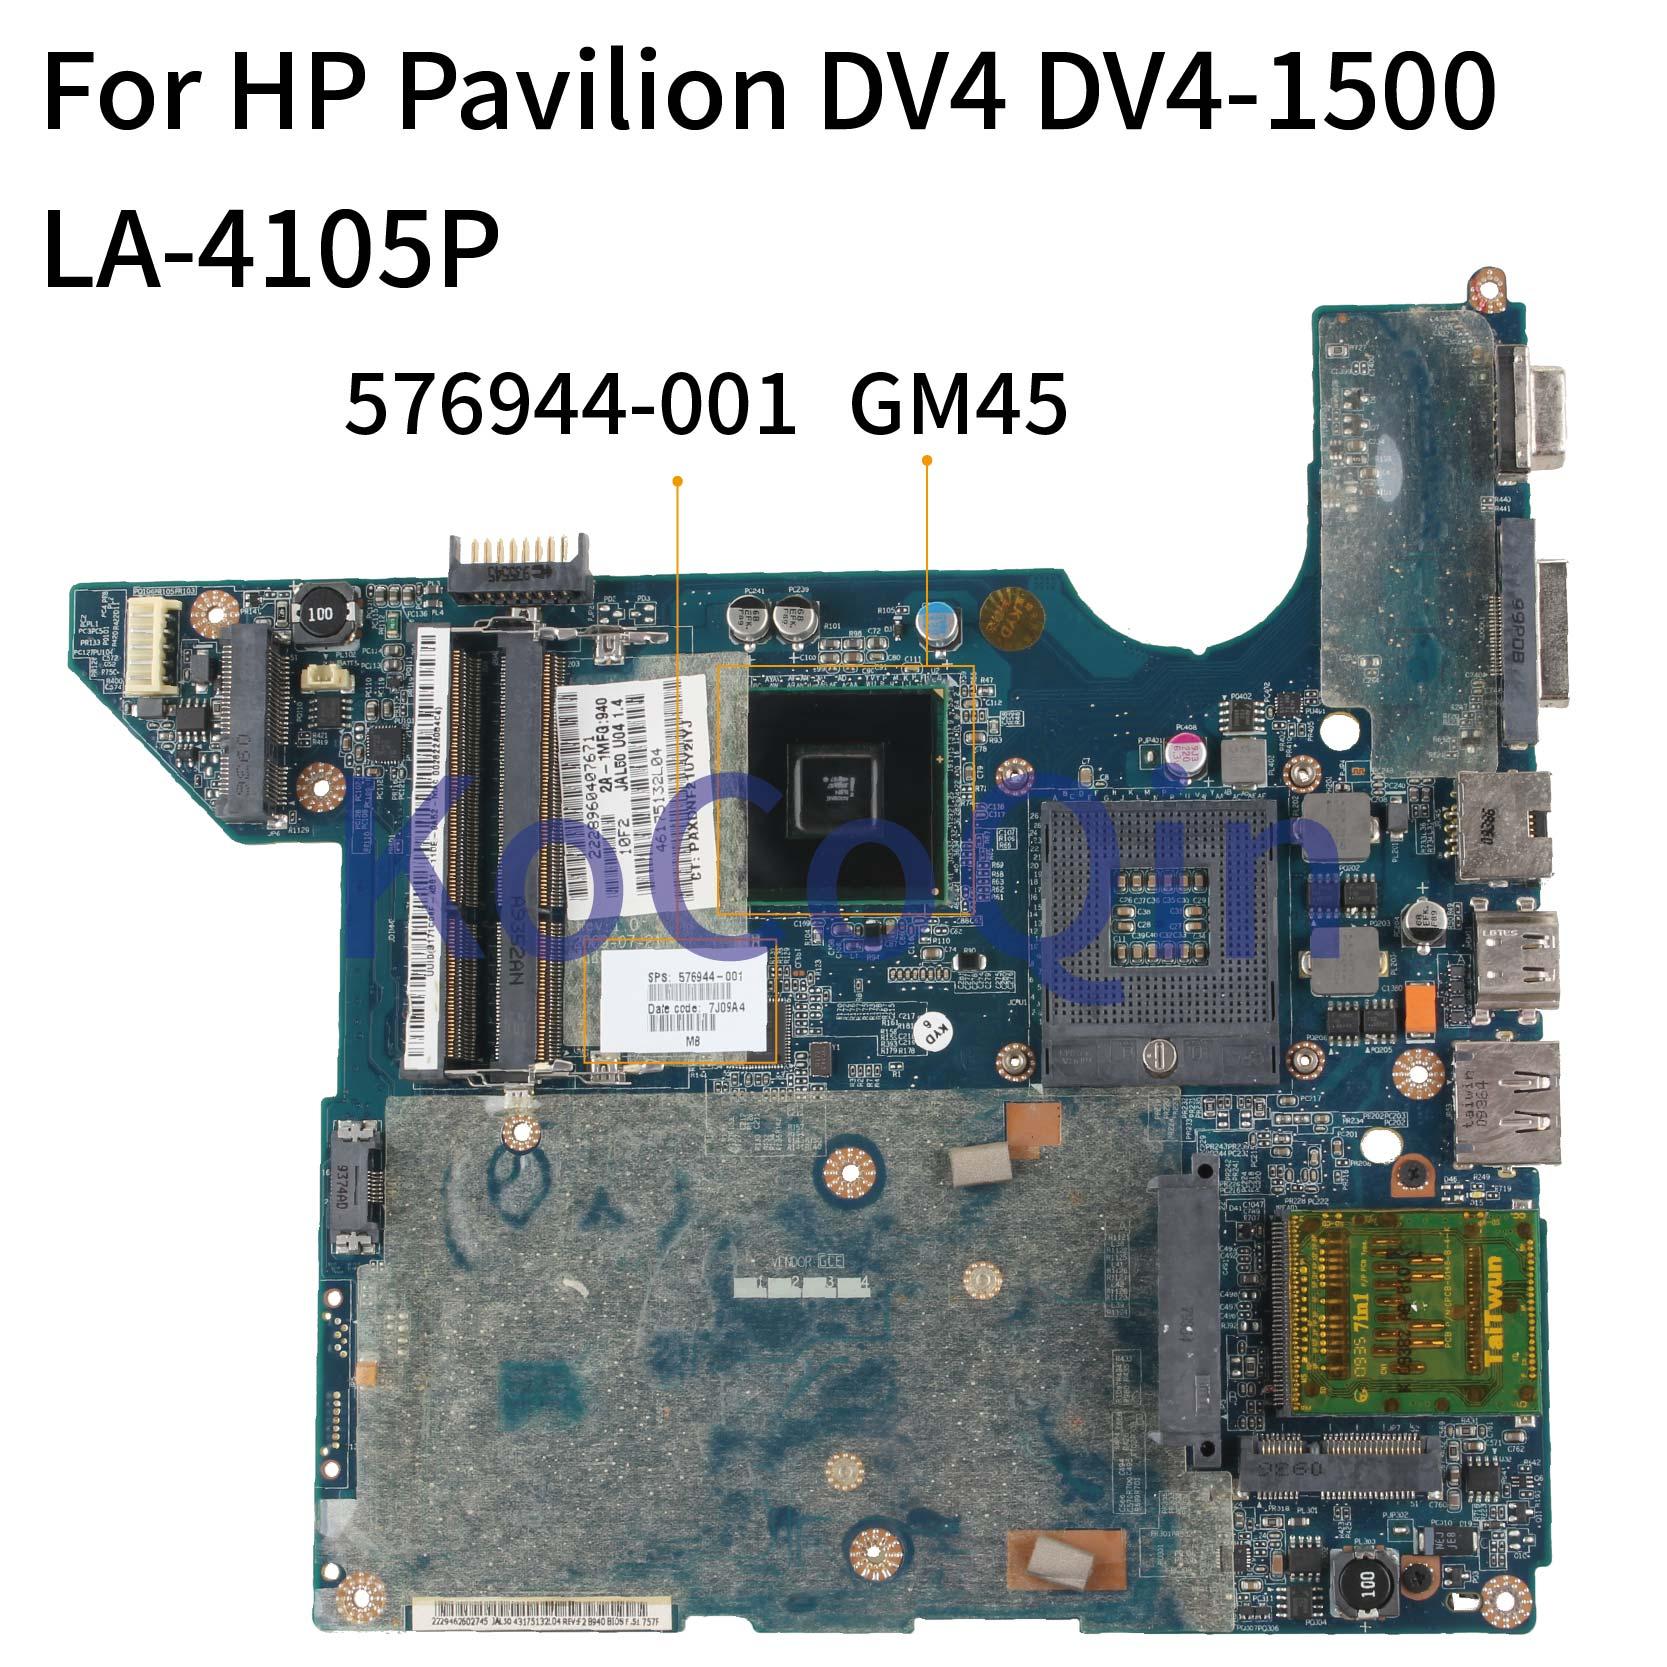 Изображение товара: KoCoQin материнская плата для ноутбука HP Pavilion DV4 DV4-1500 материнская плата 576944-001 576944-501 LA-4105P GM45 DDR3